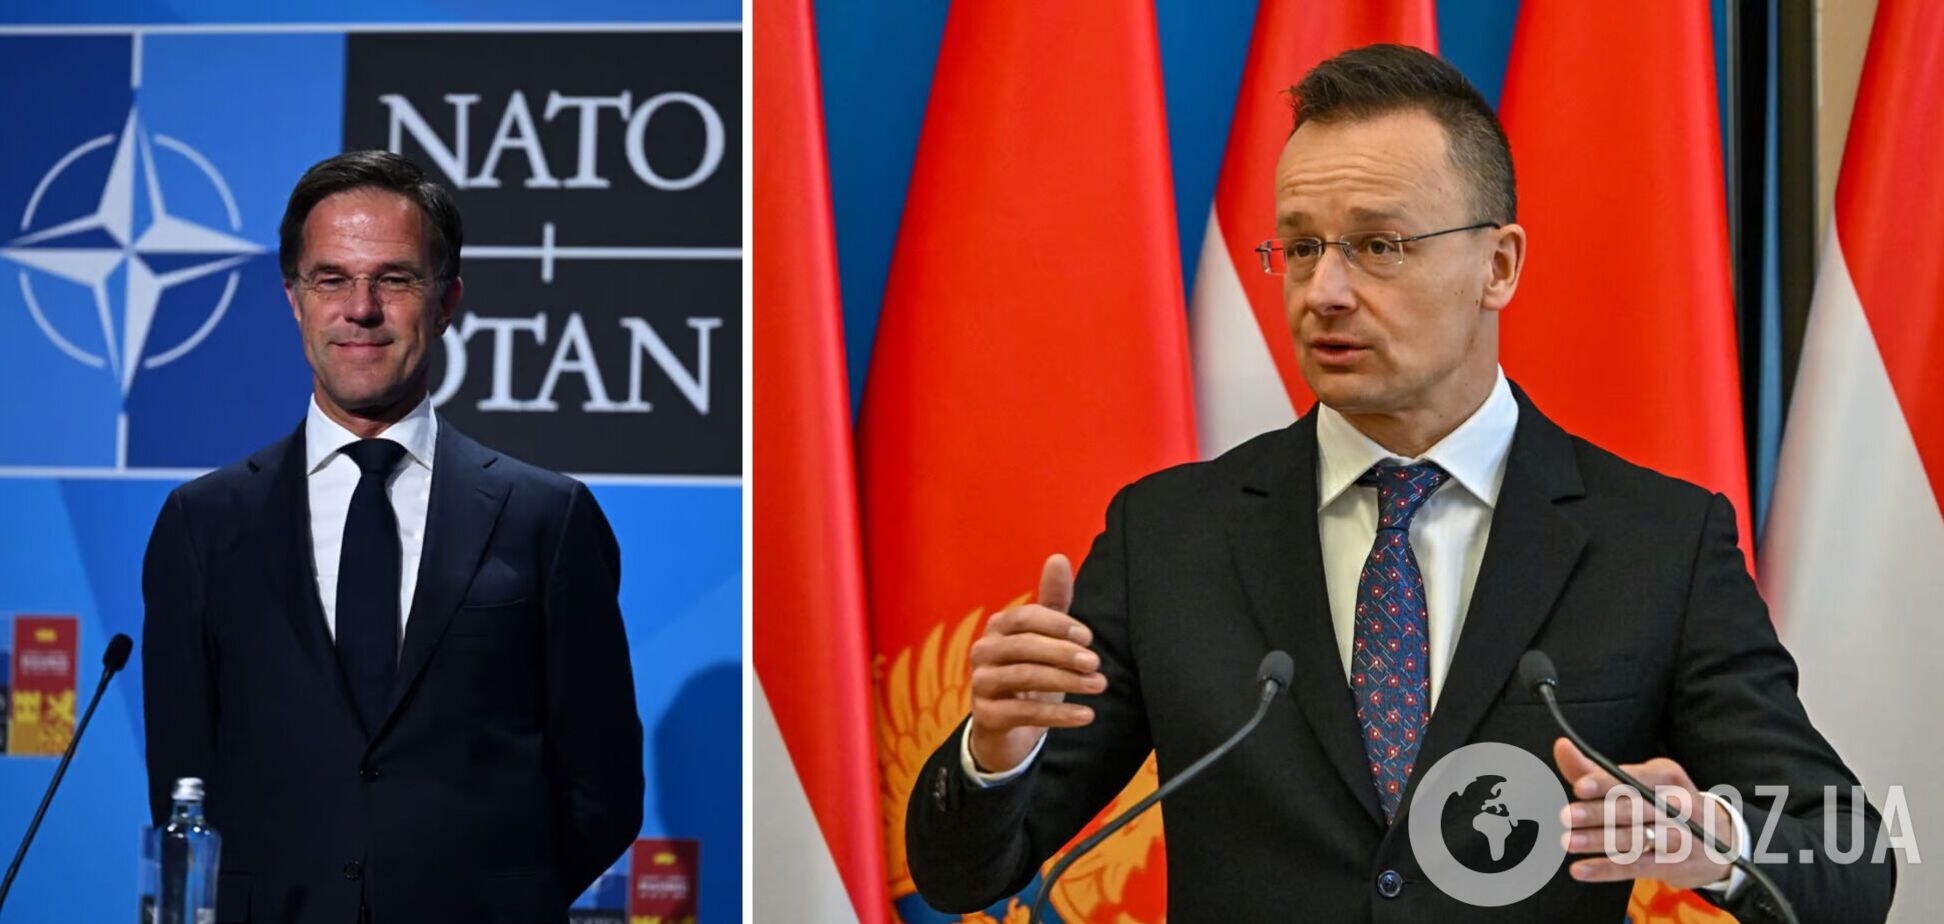 Сийярто заявил, что Венгрия не поддержит кандидата Нидерландов на должность генсека НАТО